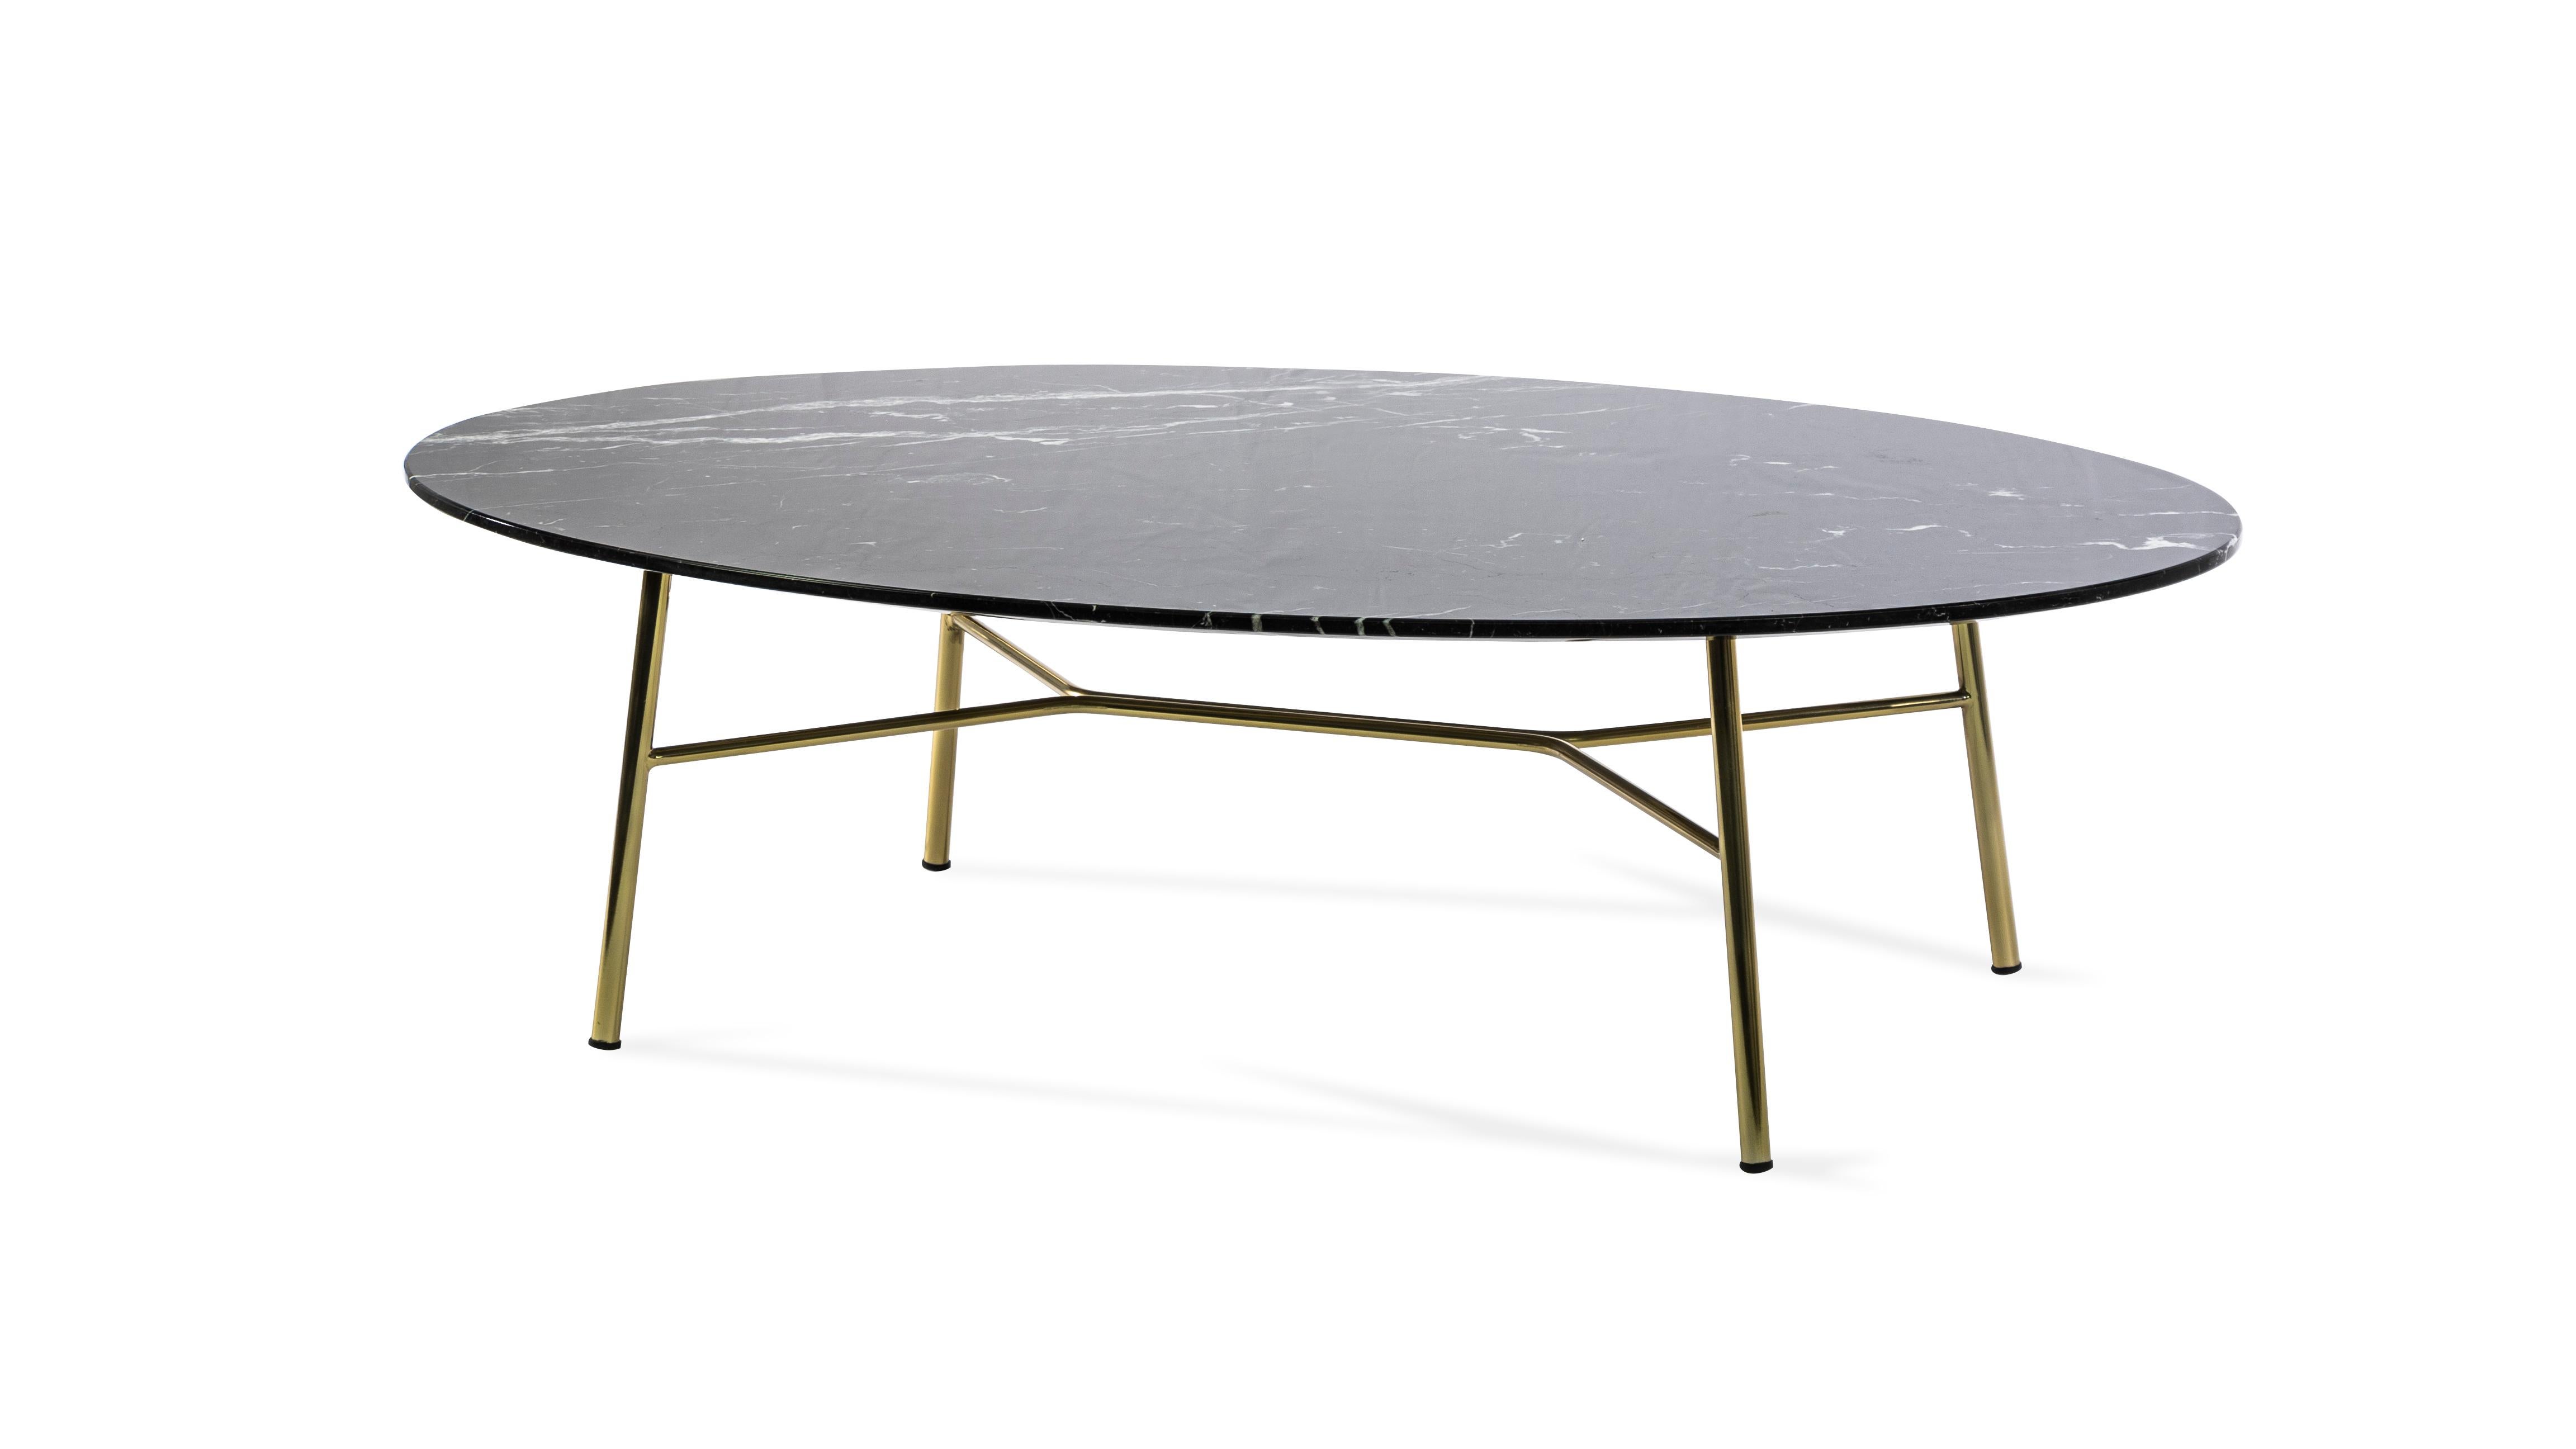 Petite table Yuki, cadre métallique, rond, couleur noire, design, table basse Neuf à MARANO VICENTINO, IT